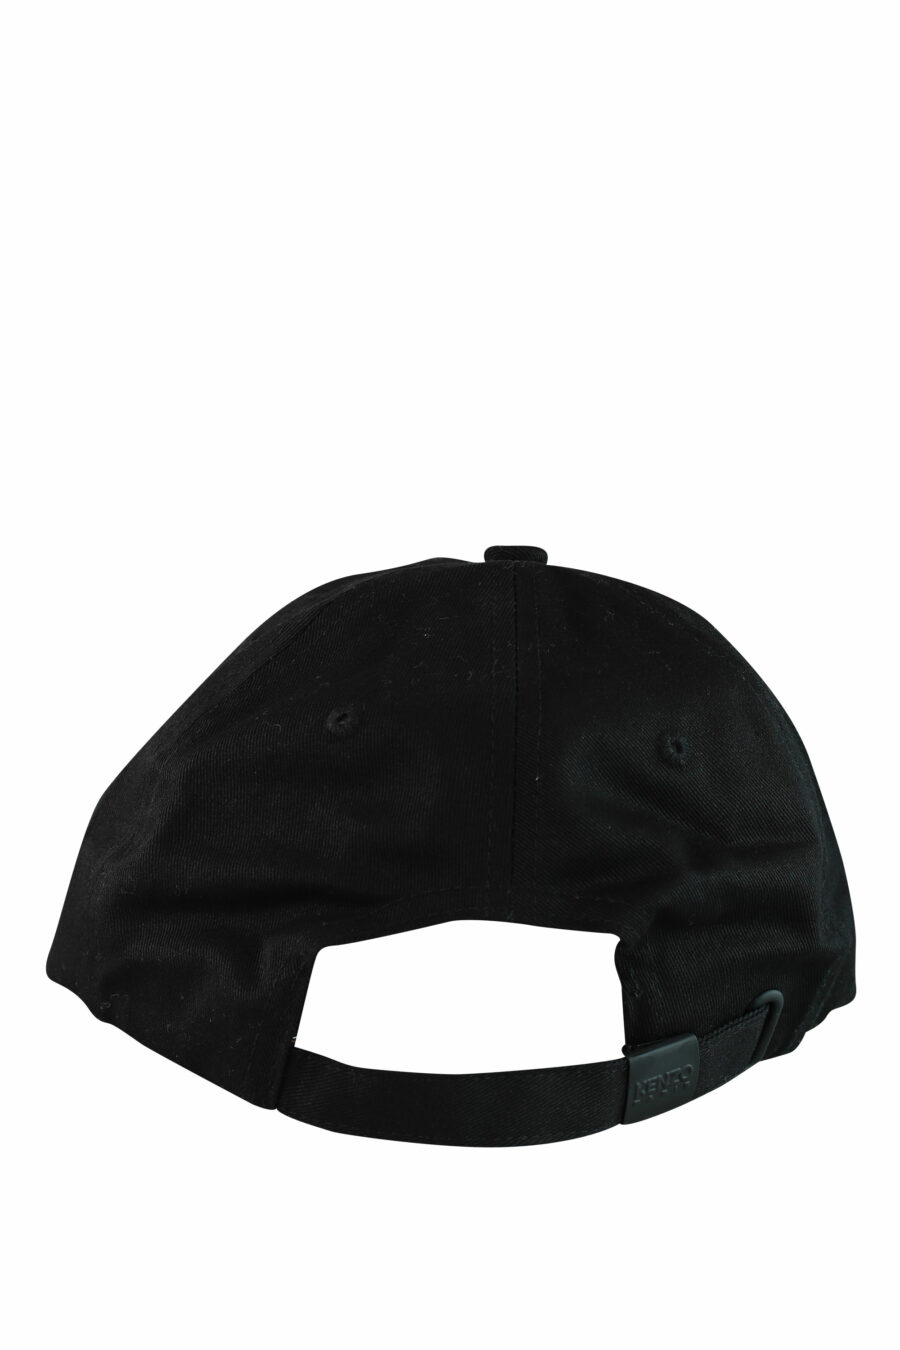 Casquette noire avec logo "paris" - IMG 1050